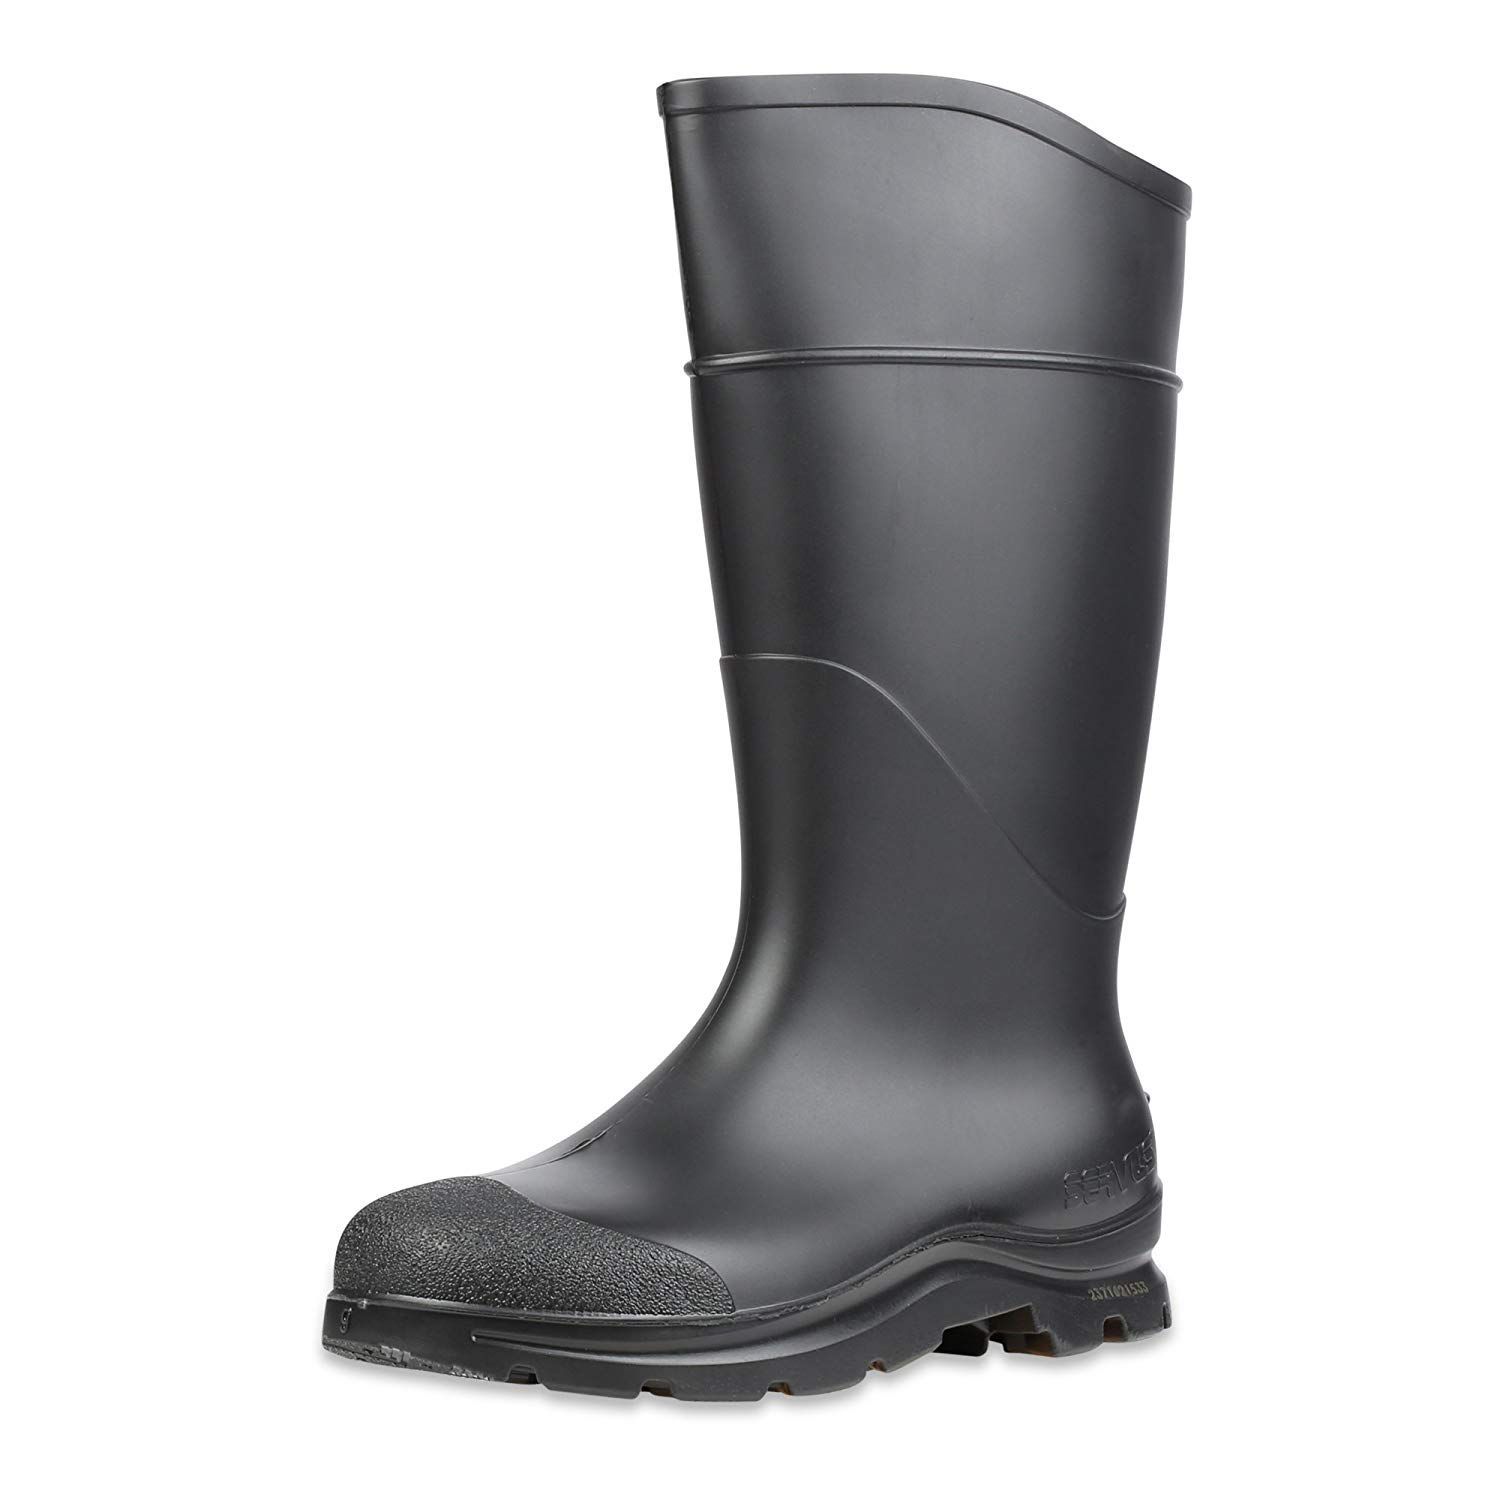 waterproof mud boots